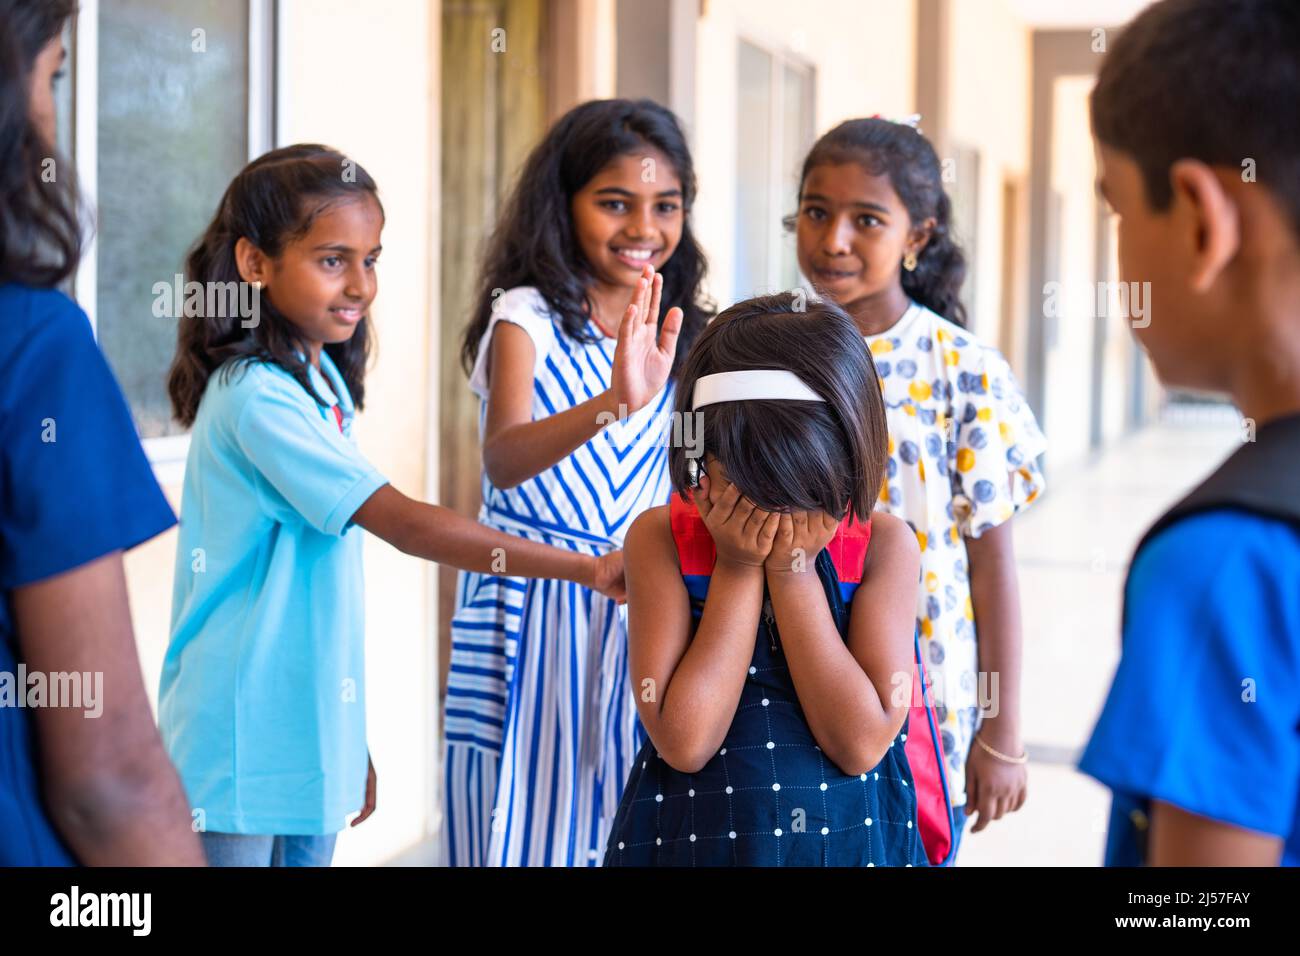 Gruppe von Kindern, die Mädchen auf dem Schulkorridor umzingeln - gekonntes Gezeter, Drohgebärden und soziale Ablehnung Stockfoto